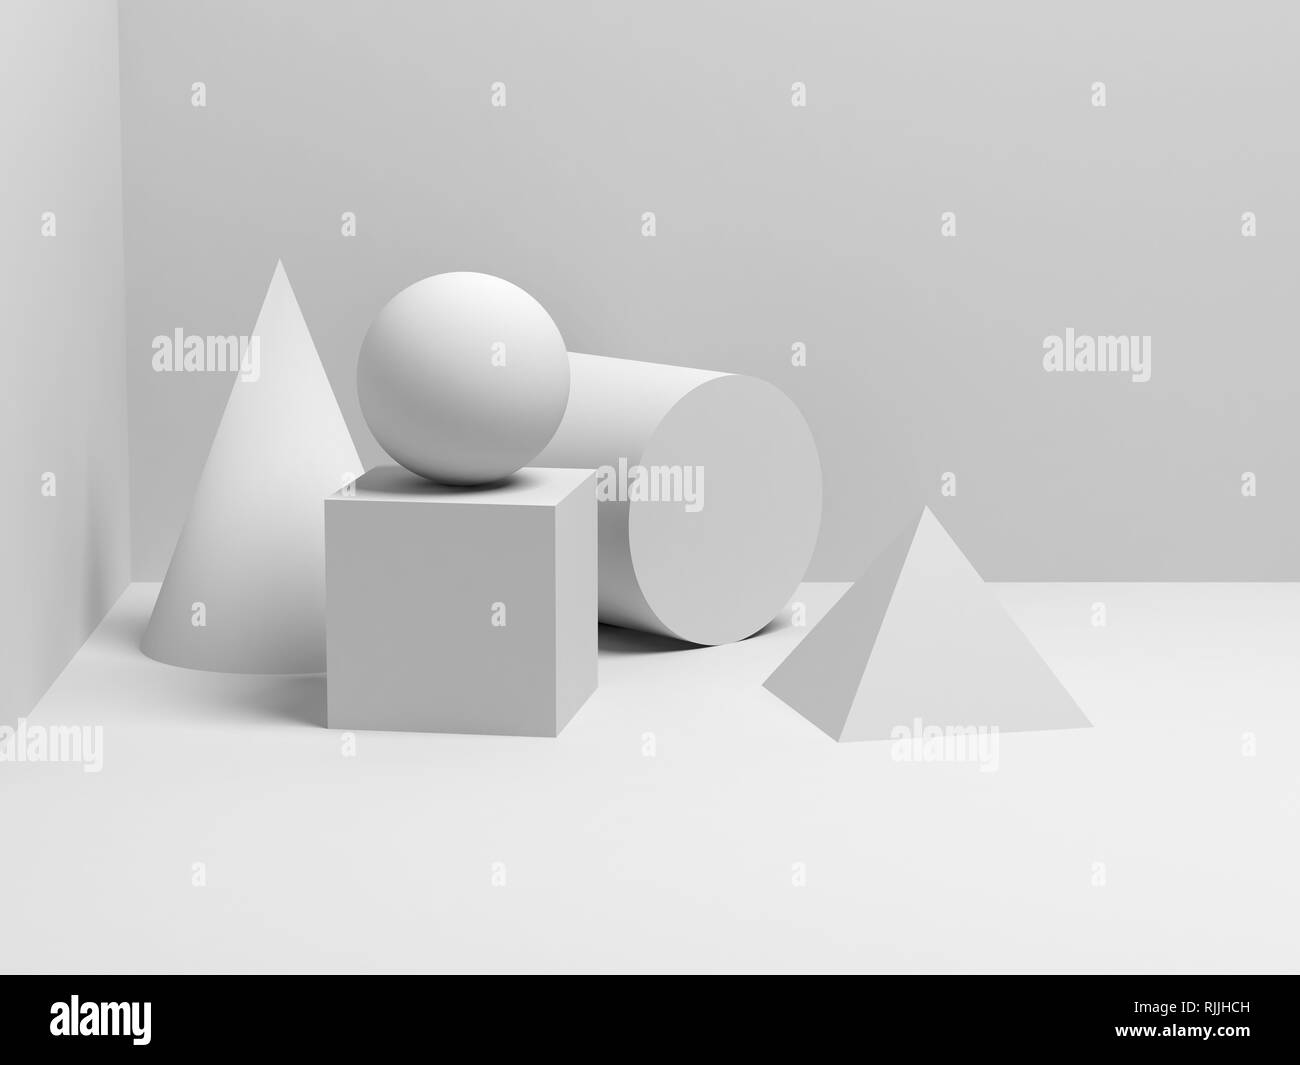 Résumé de l'installation de la vie toujours classique avec des formes géométriques primitives blanc. Illustration 3D render Banque D'Images